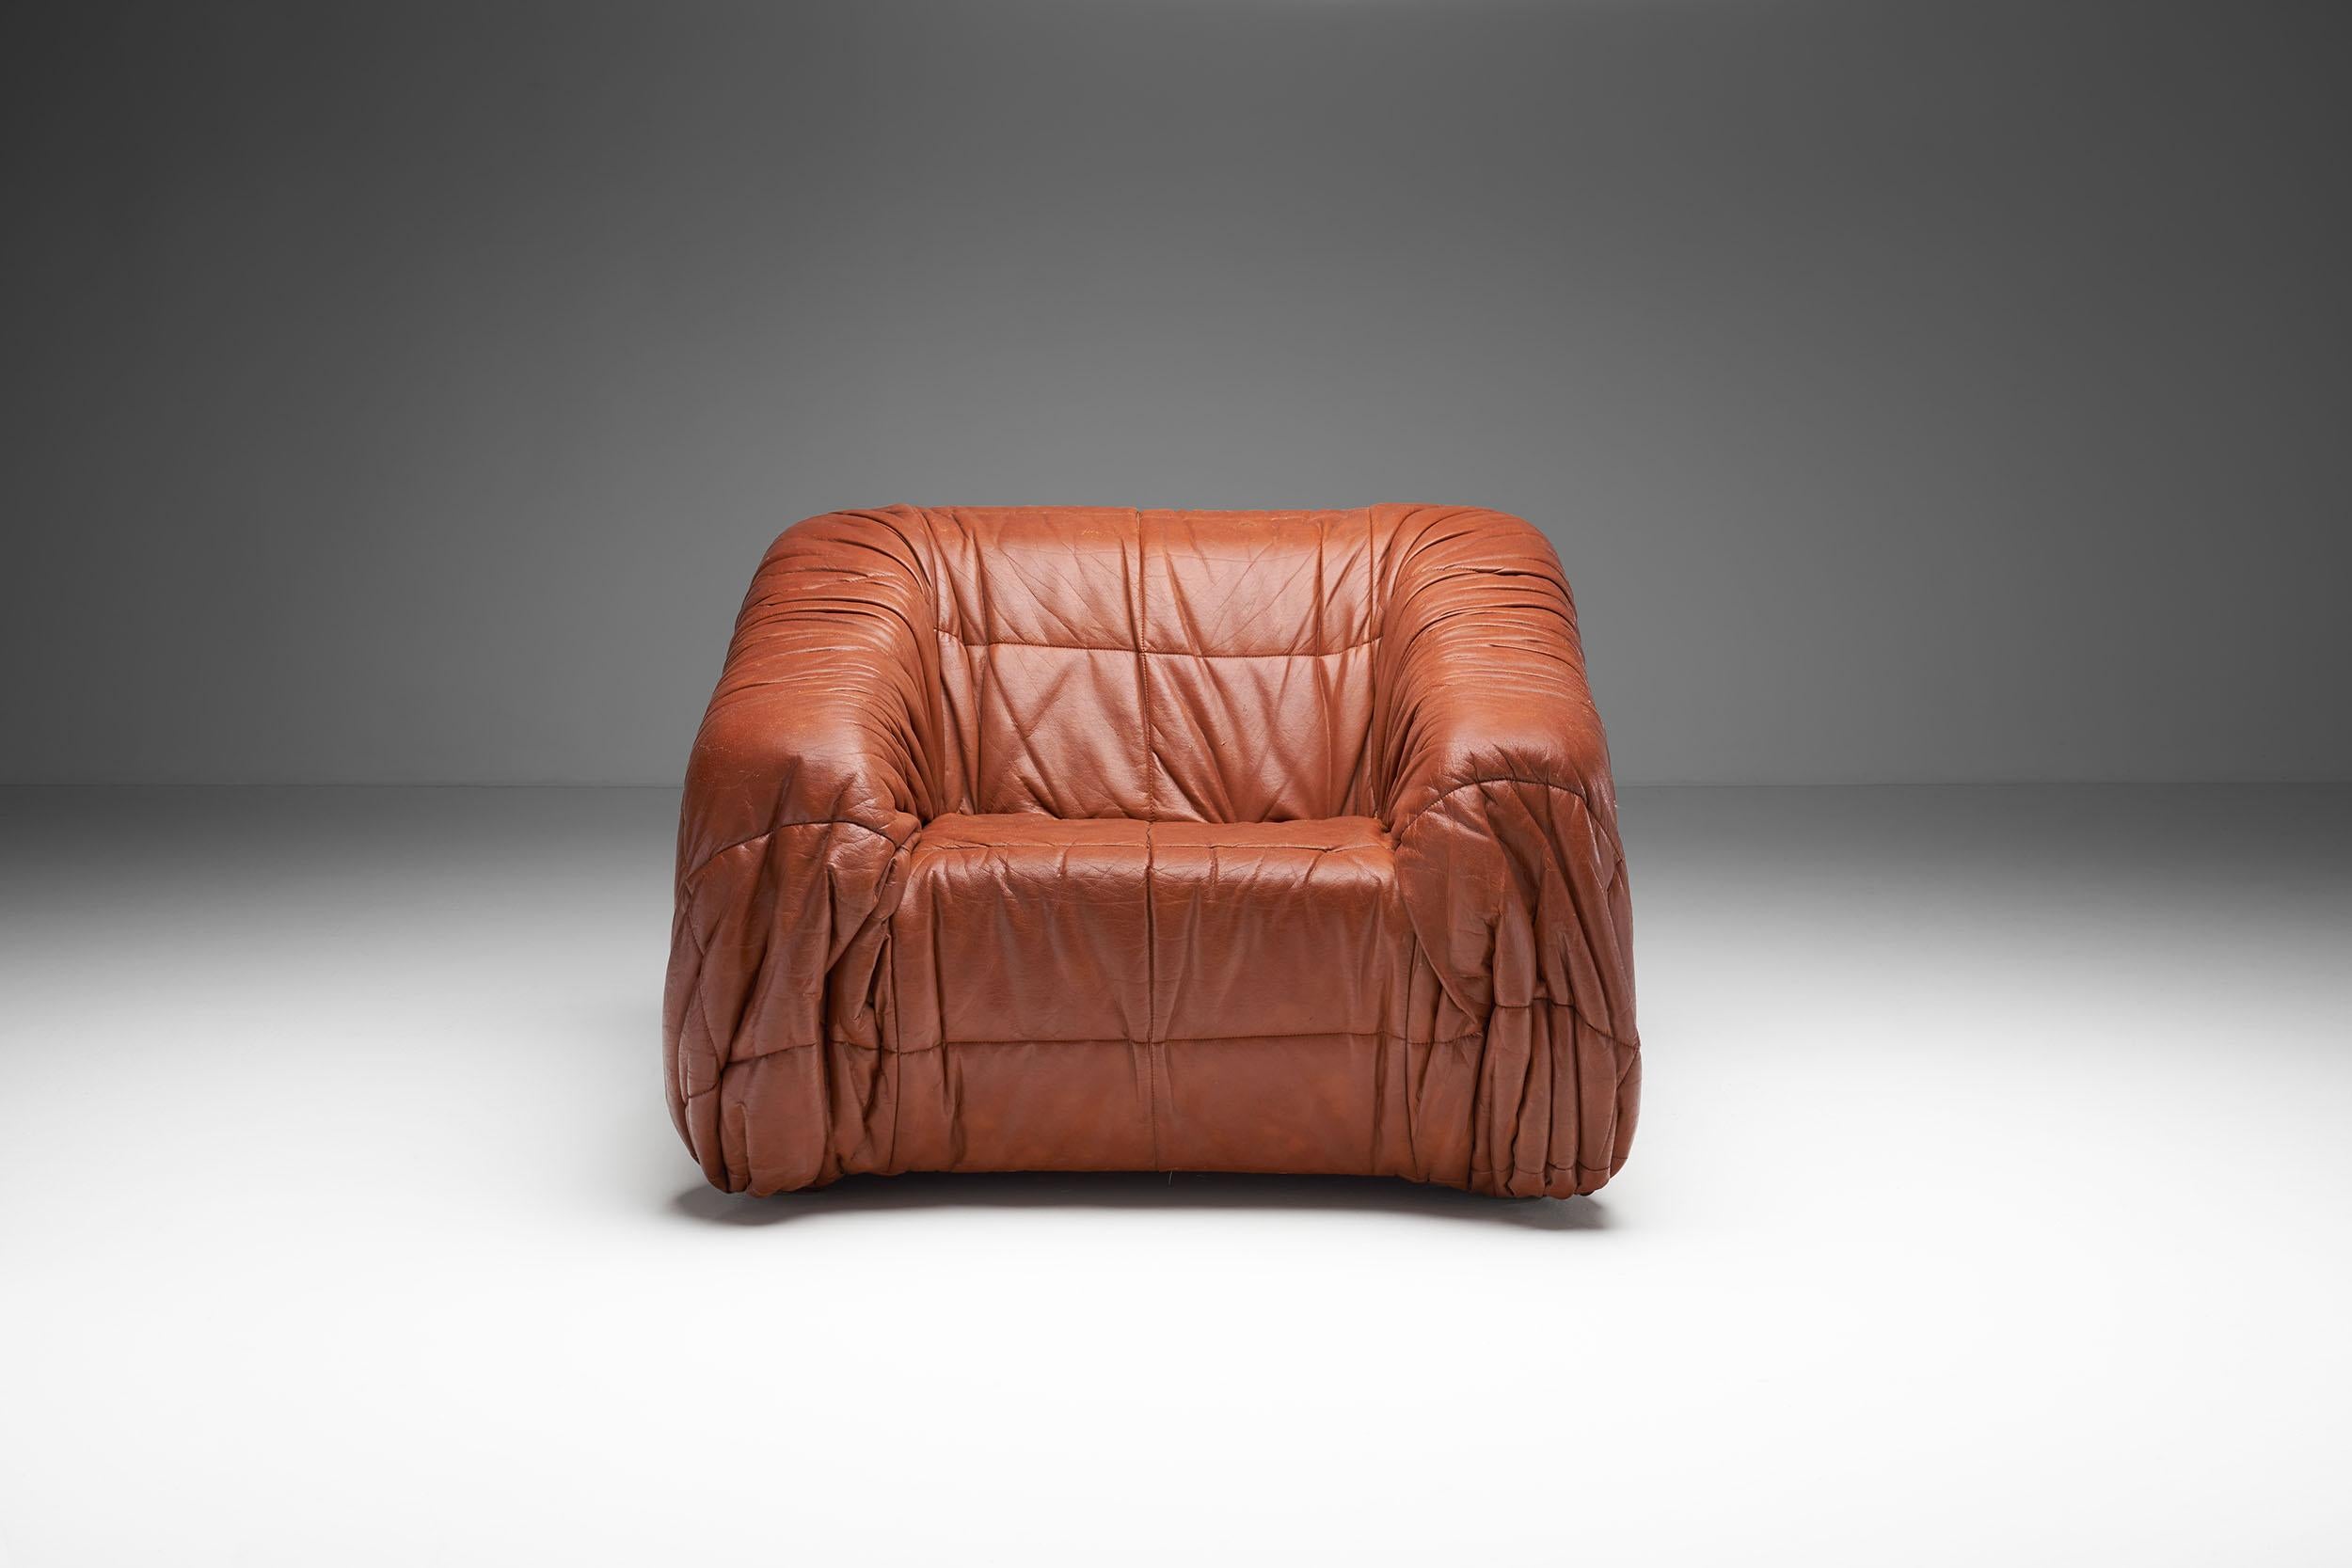 Late 20th Century “Piumino” Club Chair by De Pas, D’urbino & Lomazzi for Dell’Oca, Italy 1970s For Sale